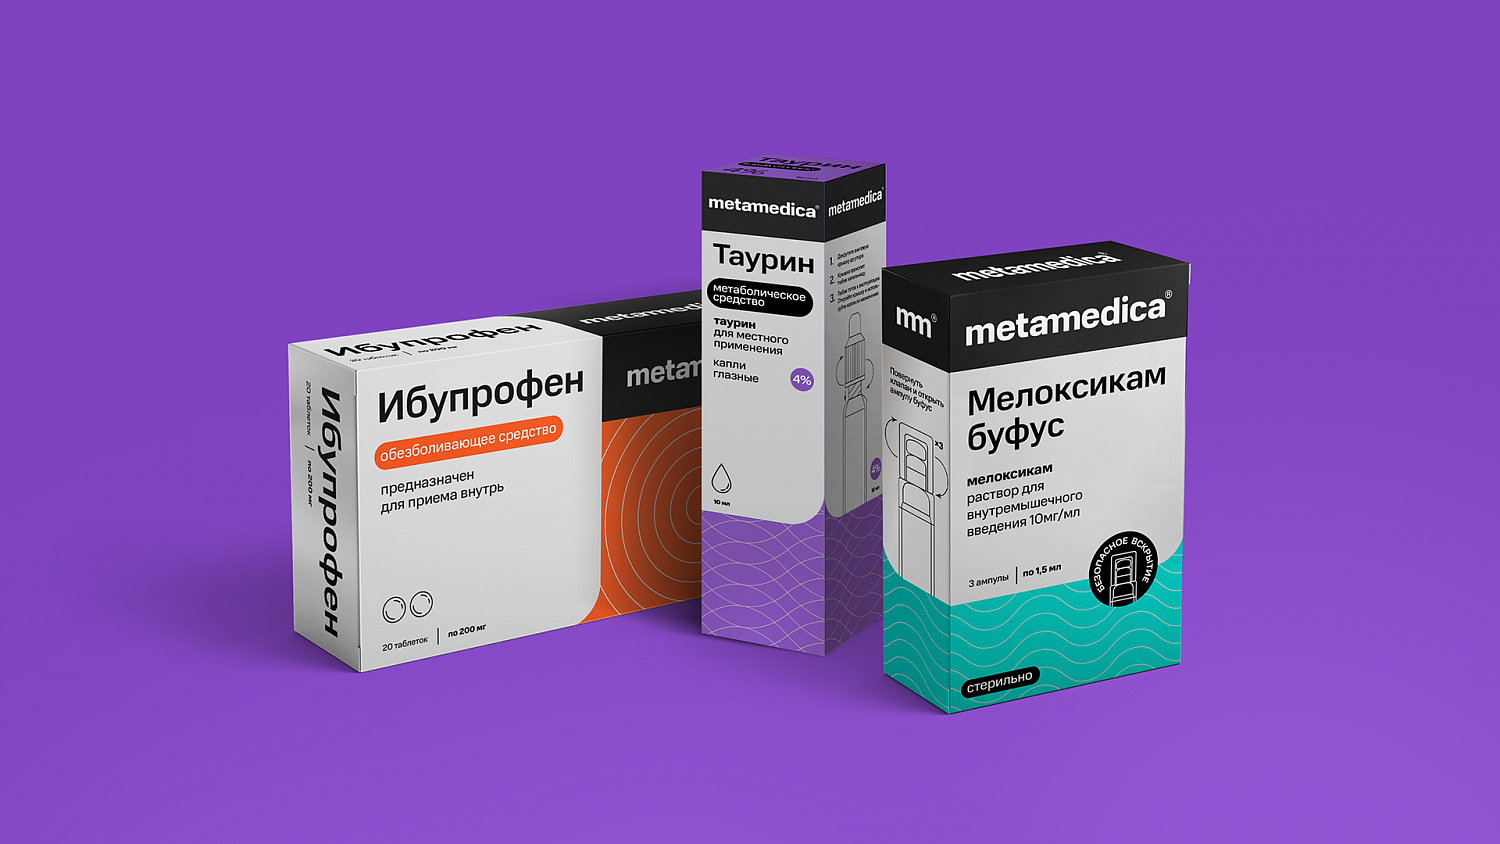 Метамедика: Нейминг, фирменный стиль и дизайн упаковки лекарств - Портфолио Depot